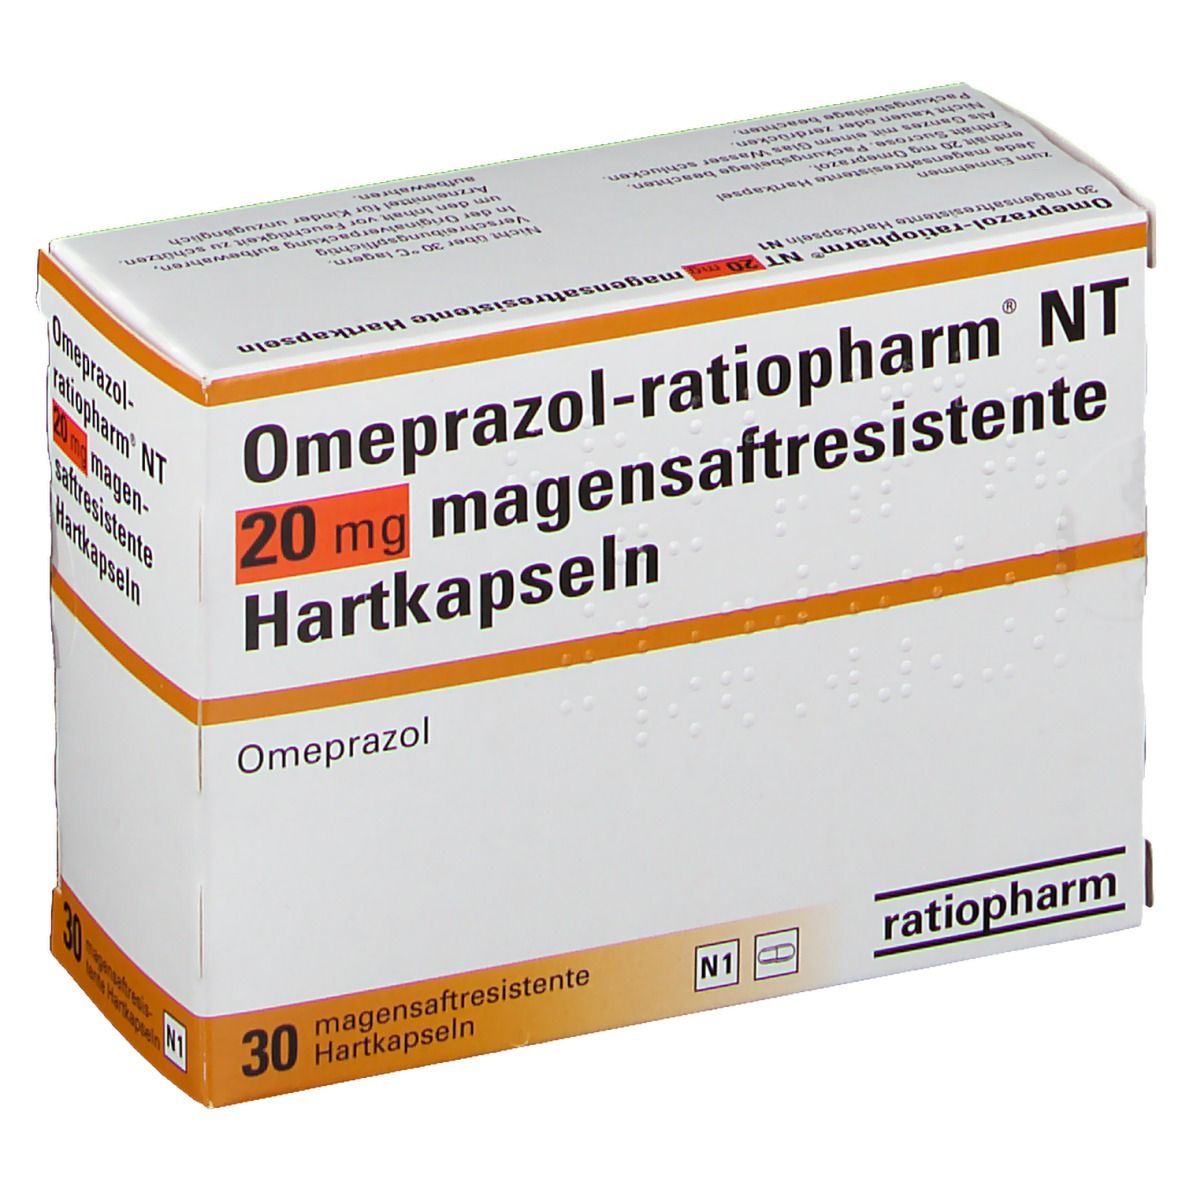 Omeprazol-ratiopharm® NT 20 mg